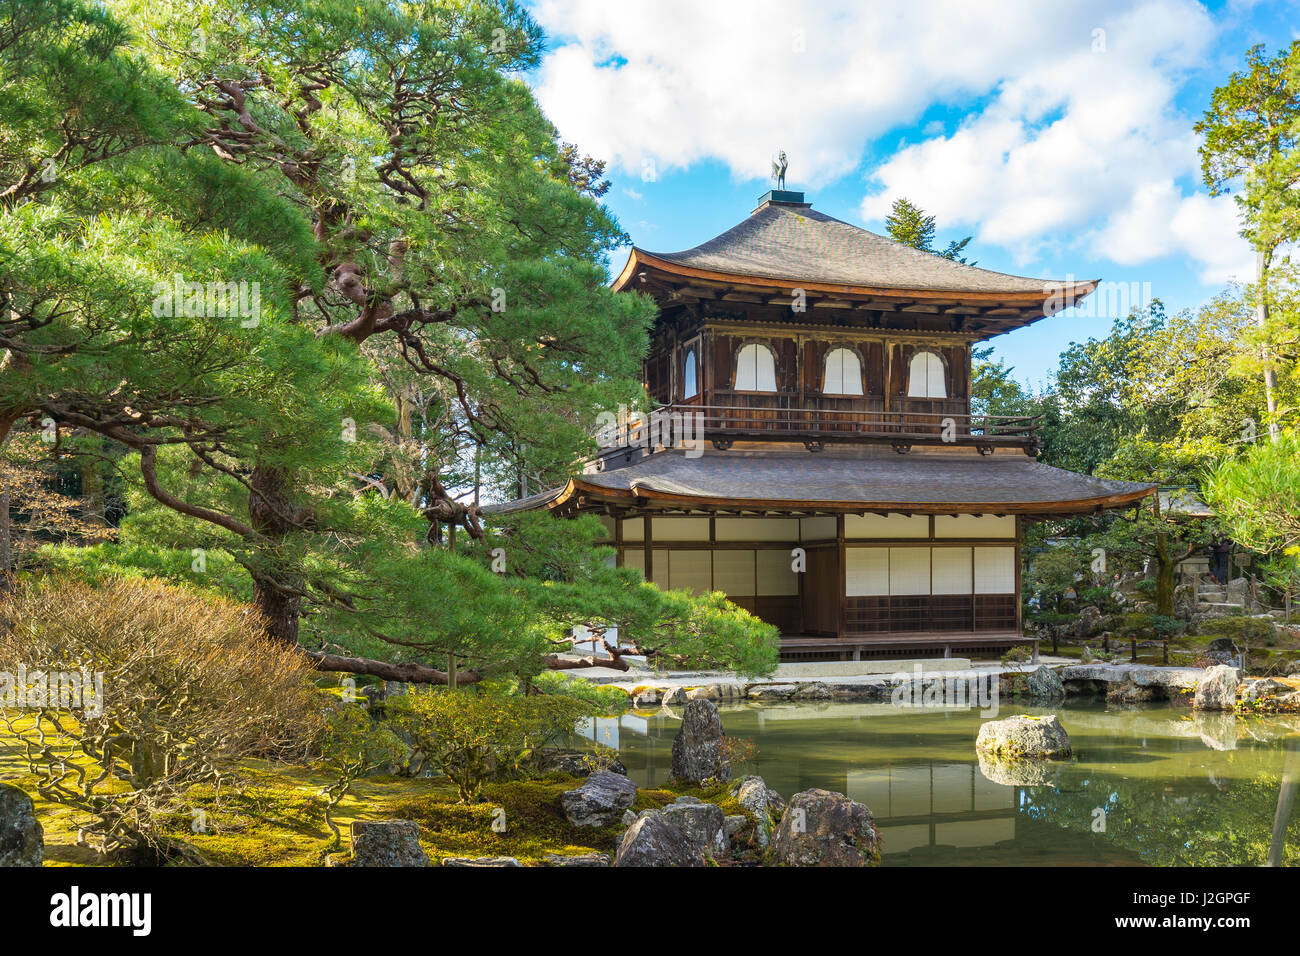 Kyoto, Japón - Diciembre 30, 2015: Ginkakuji es un templo Zen en Kyoto's montañas orientales (Higashiyama). Foto de stock